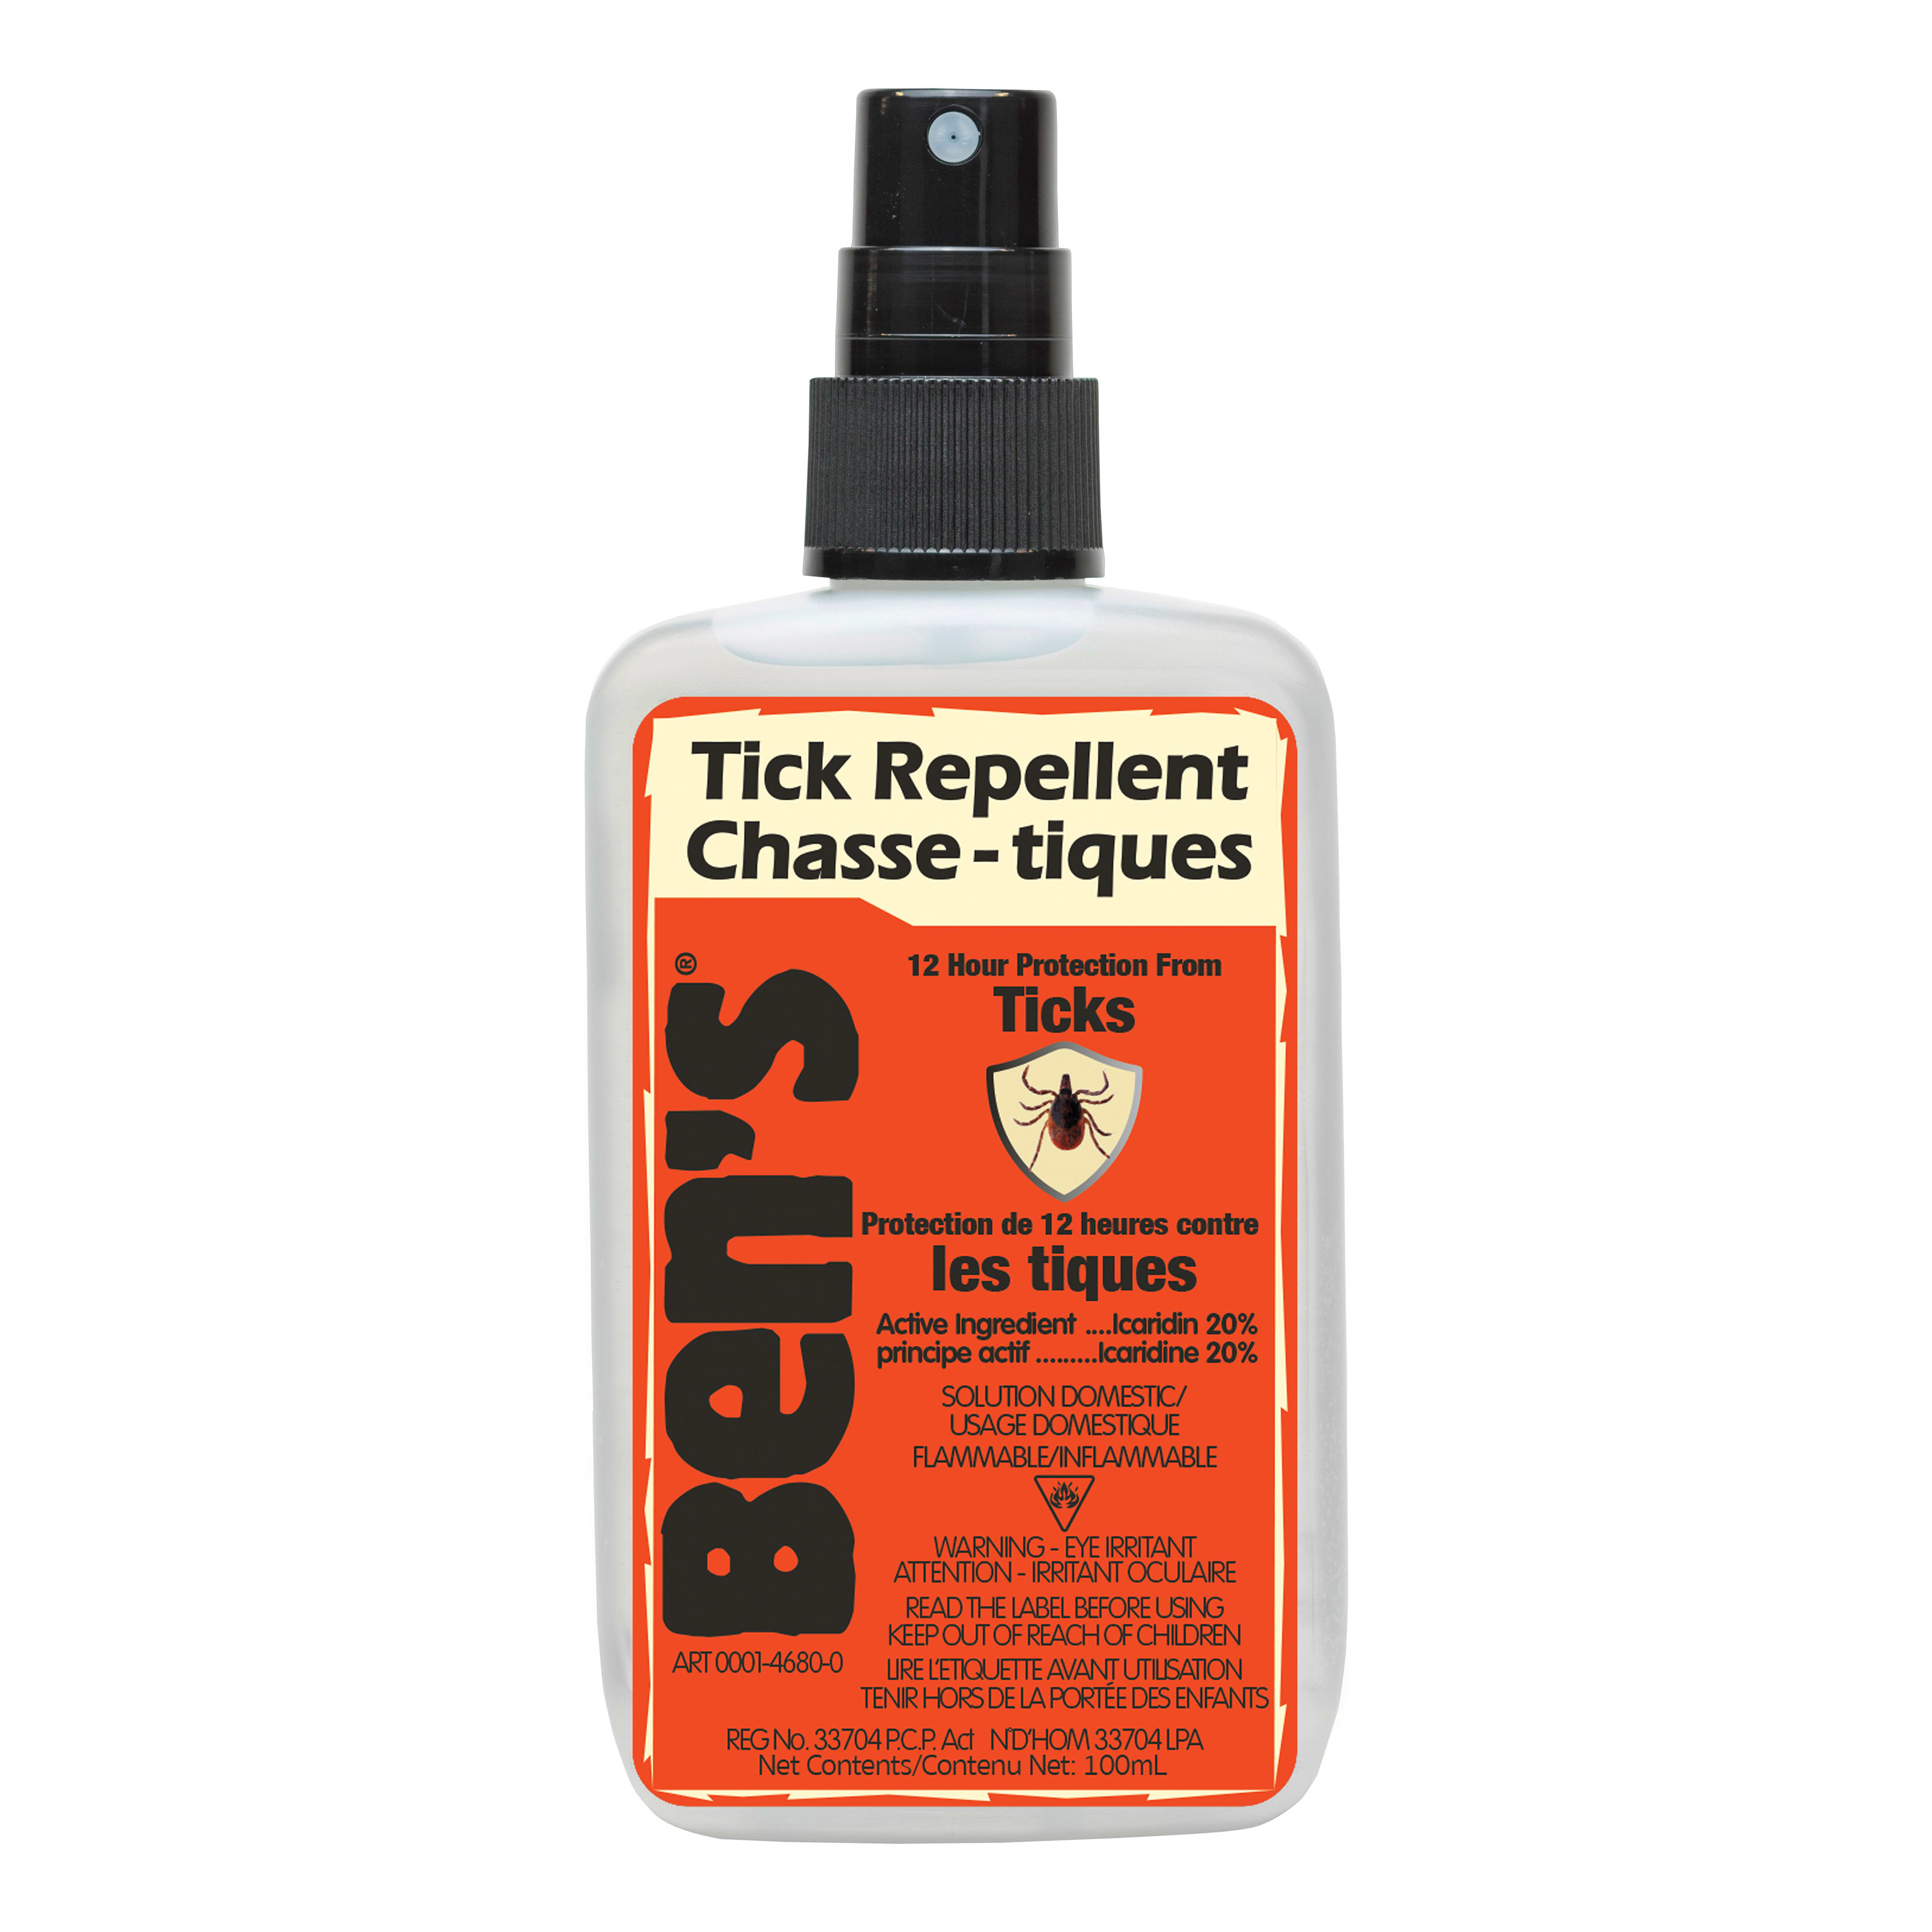 Ben’s Tick Repellent